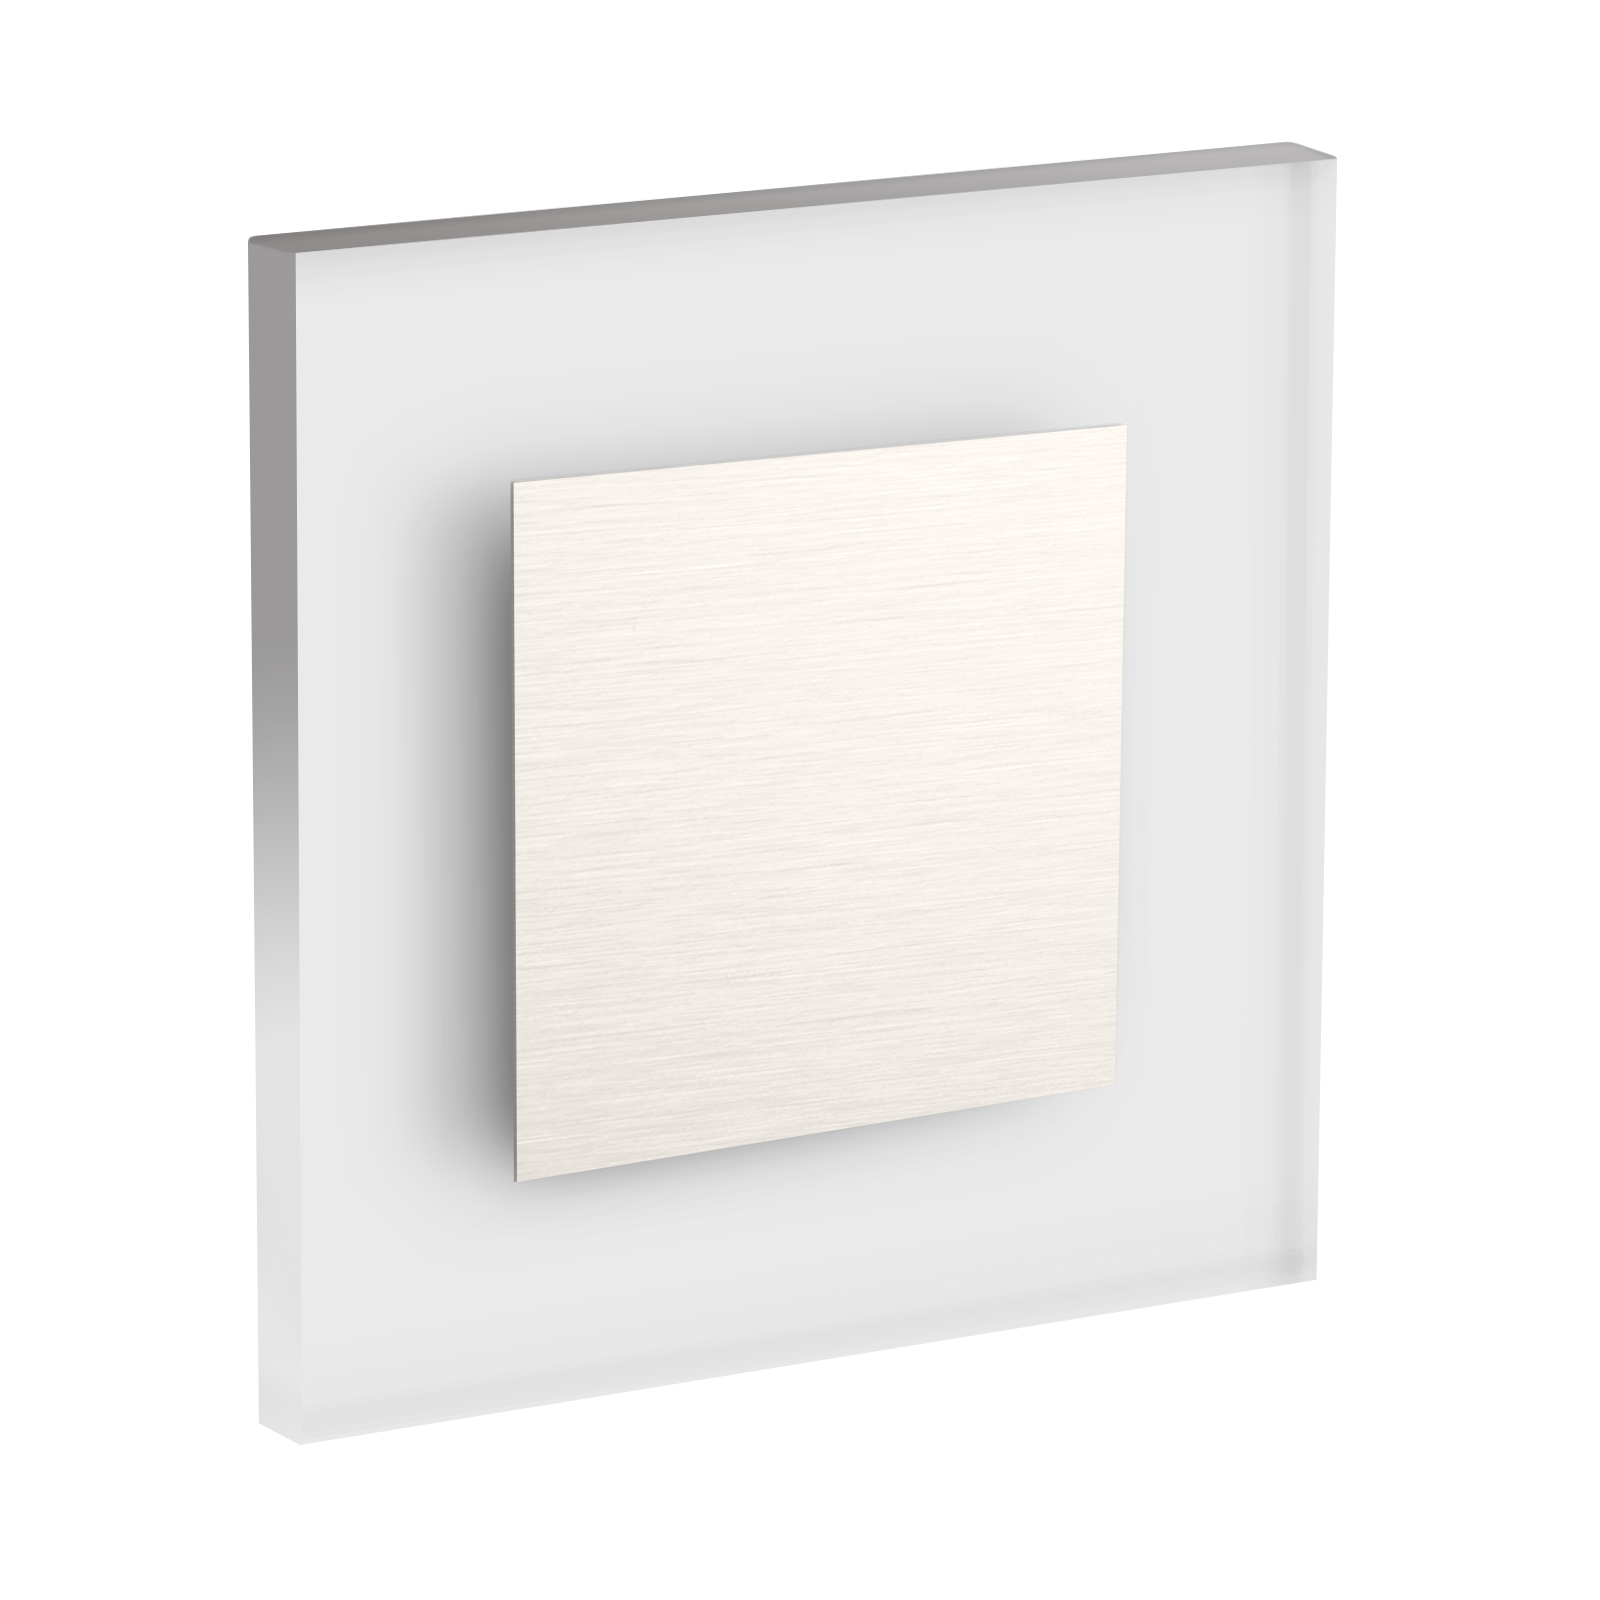 LED Wandeinbaustrahler Treppenlicht Wandeinbauleuchte warmweiß flach Satinglas quadratisch WB1 230V